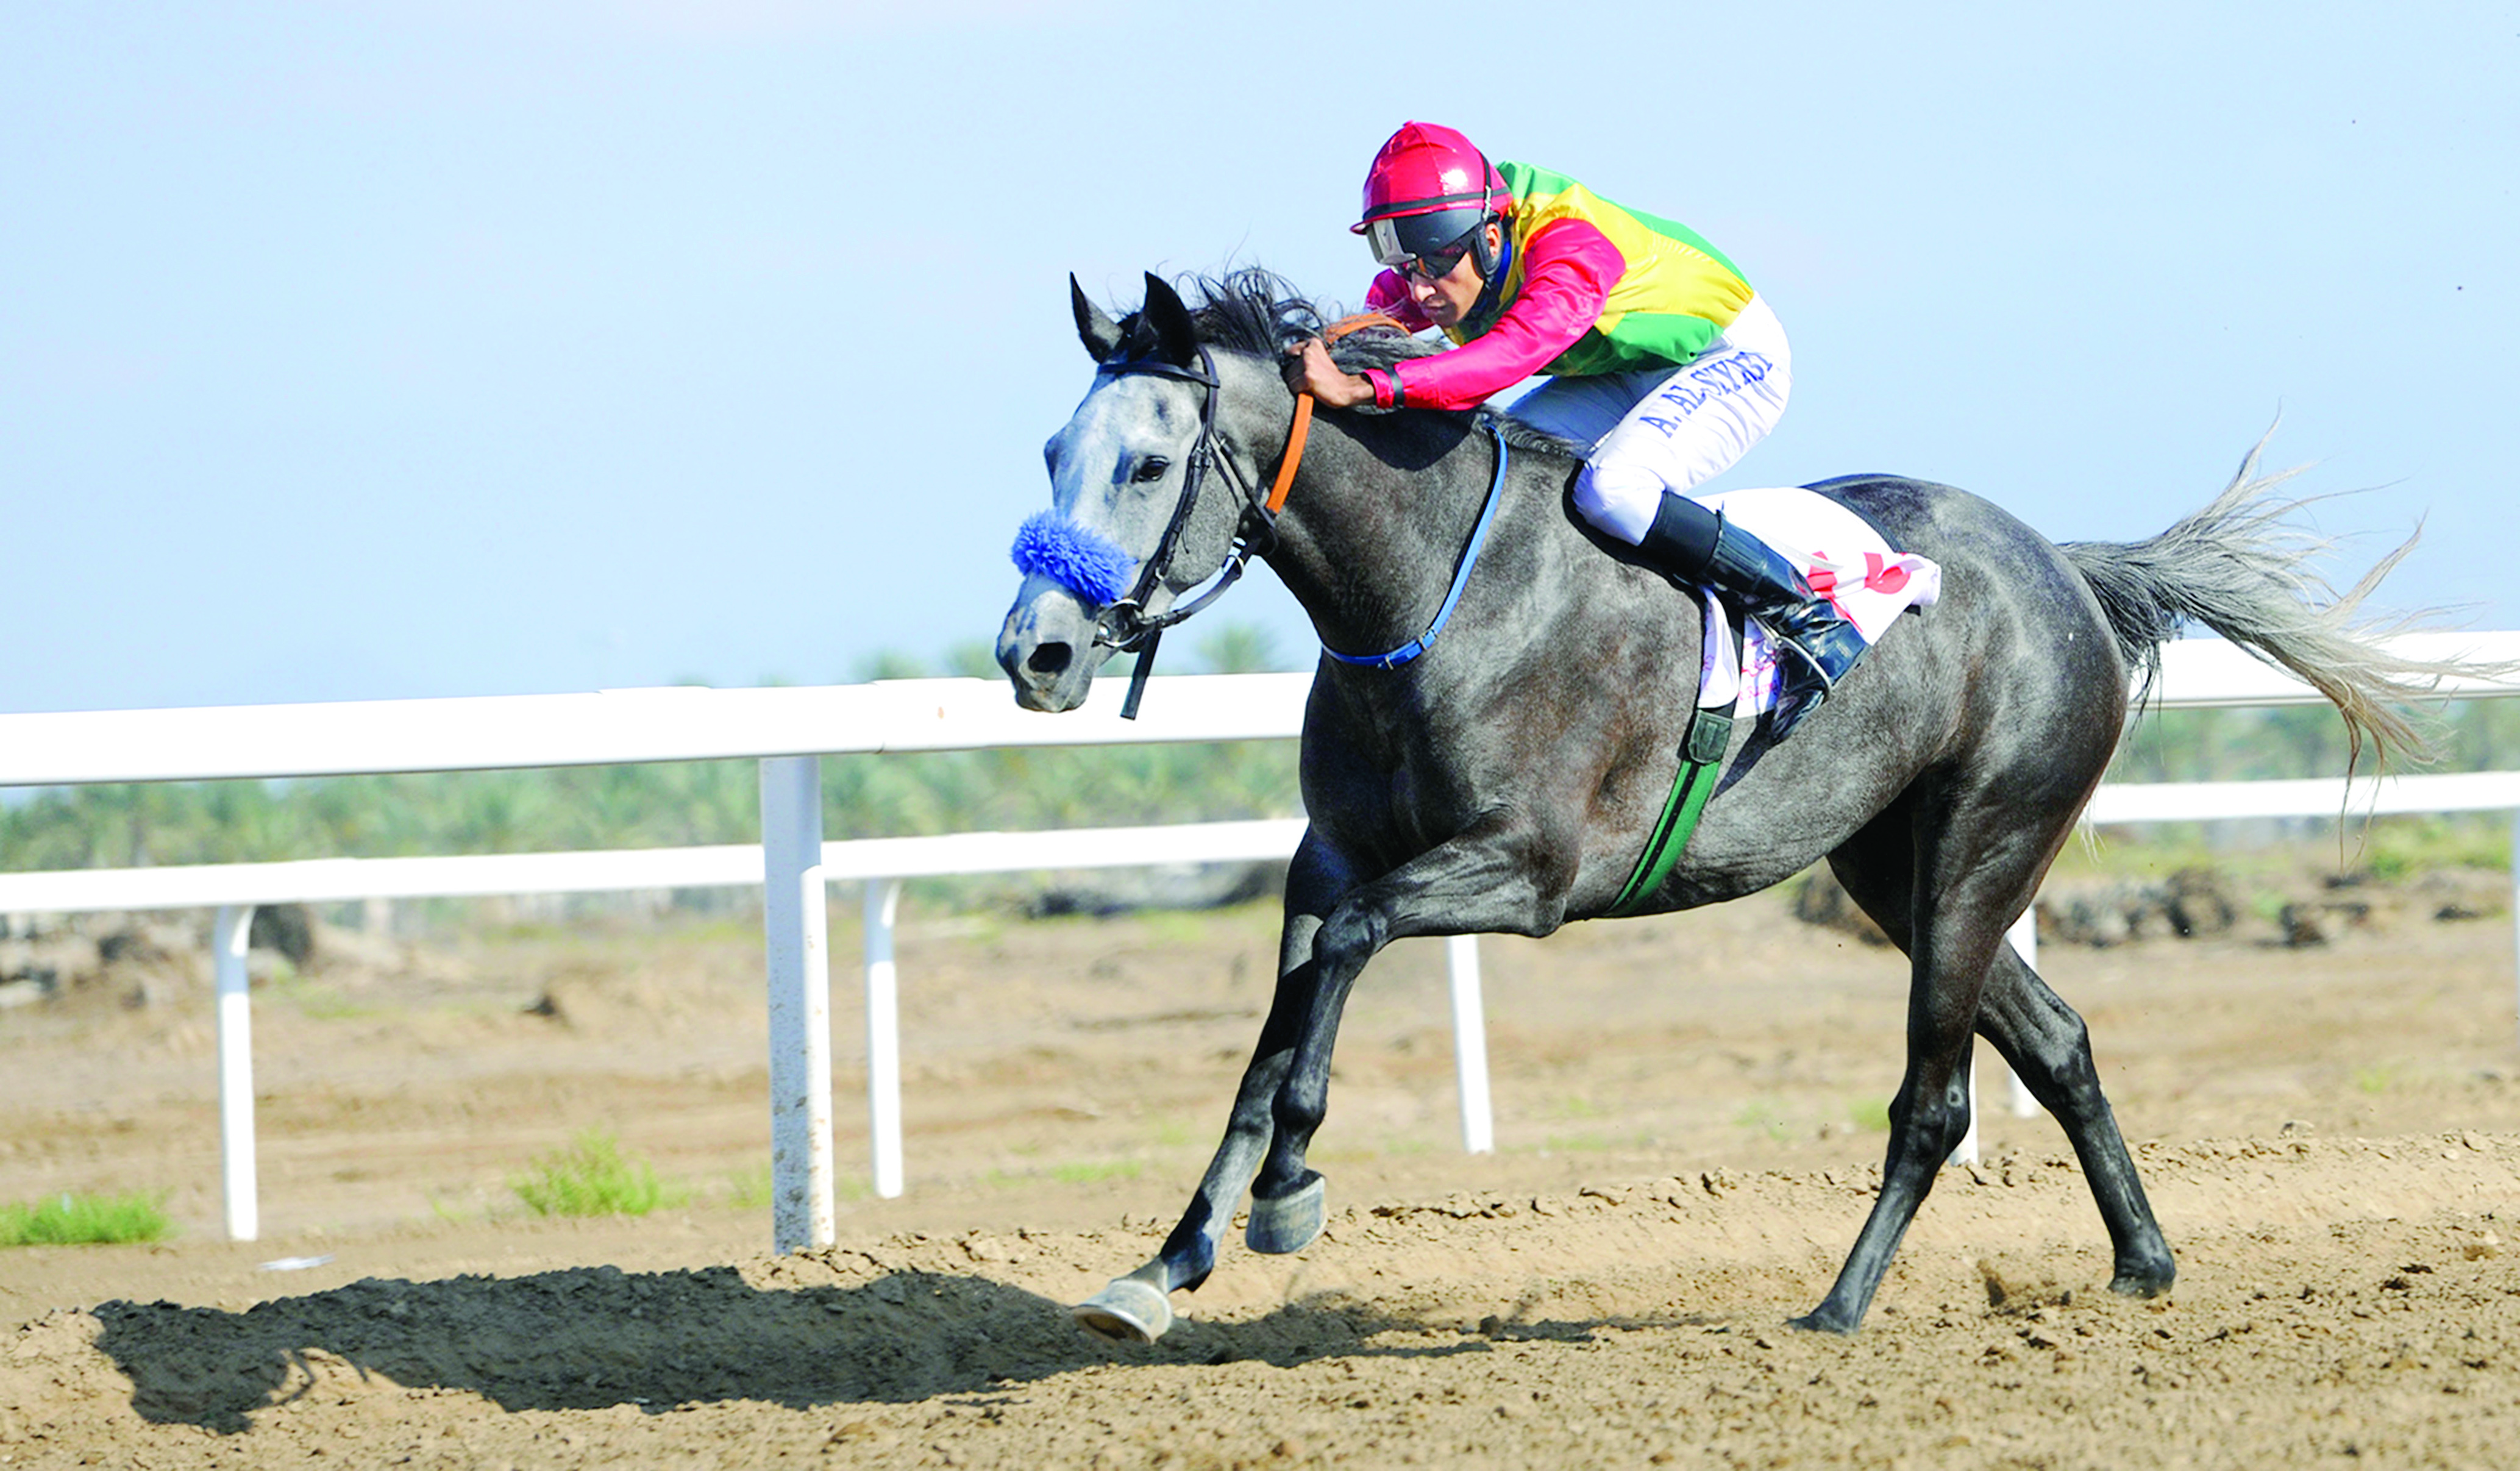 «عمير» و«معزوز» مرشحان لحسم كأس الخيول العربية 

موعد جديد لعشاق الفروسية في سباق الخيل الثالث